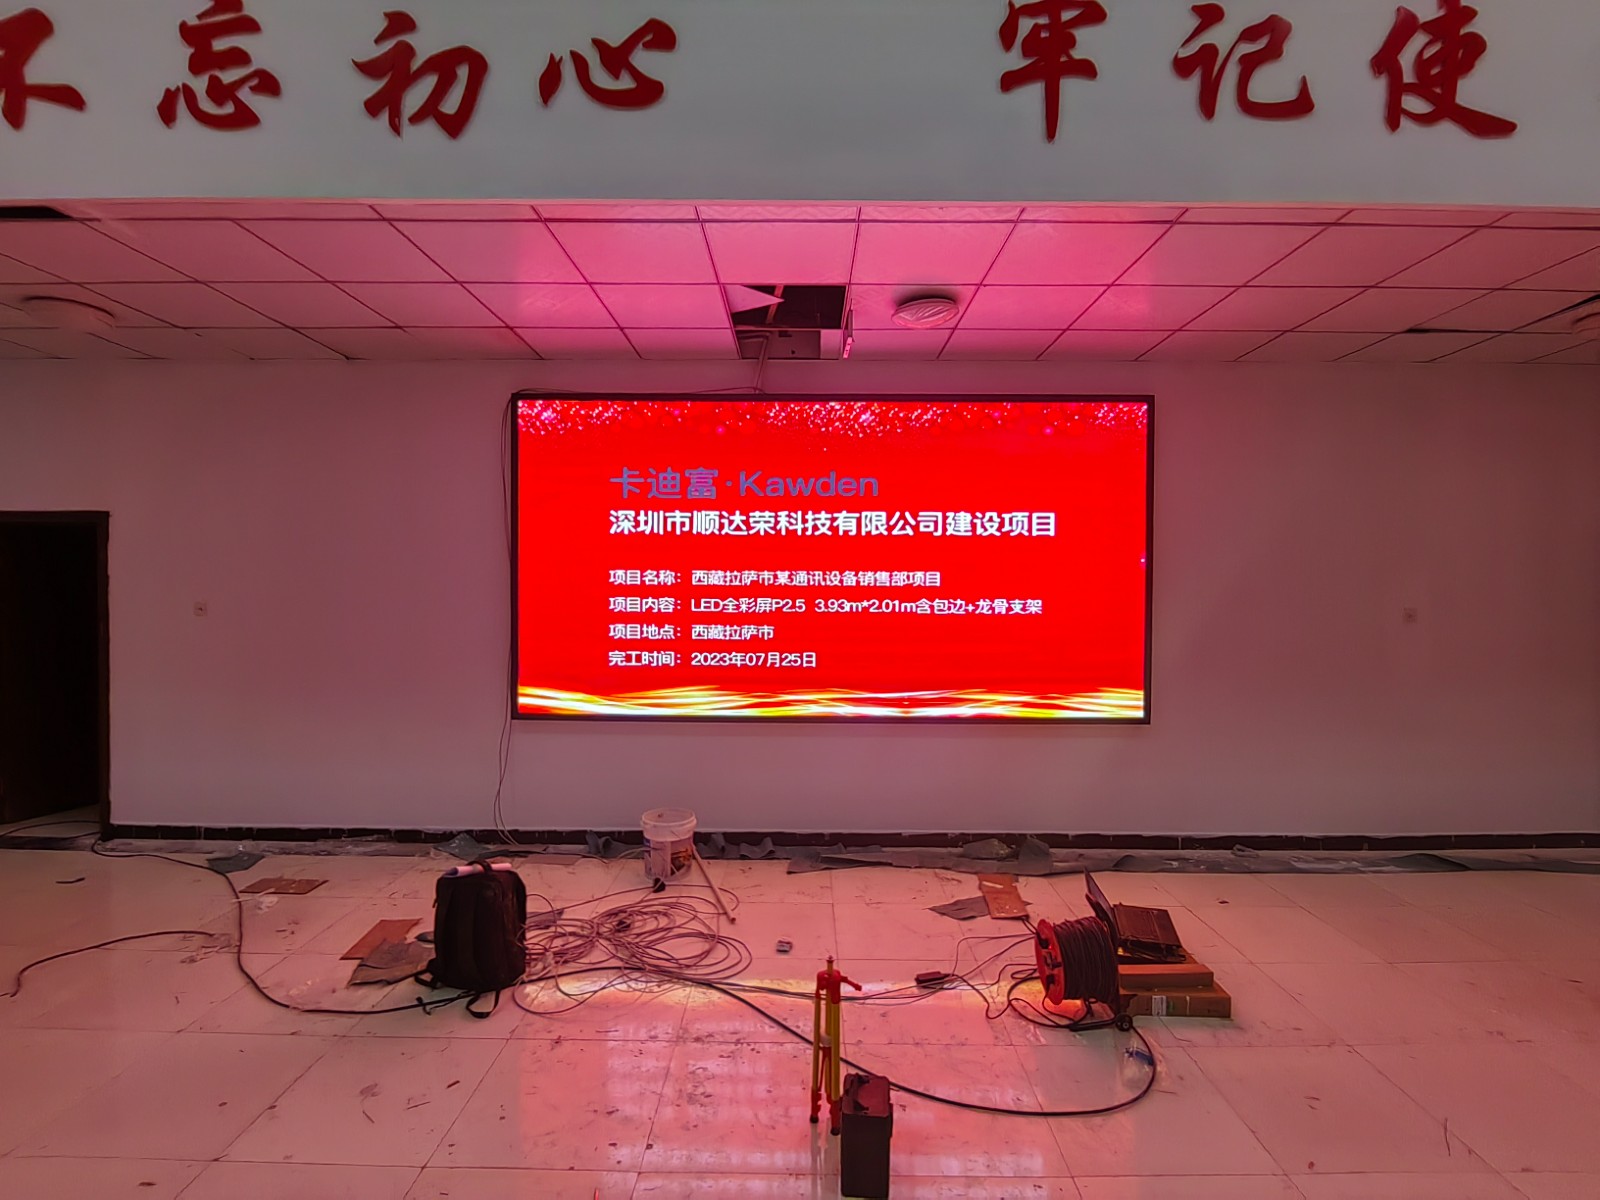 西藏拉萨市某通讯设备销售部项目P2.5led显示屏展示案例图片9